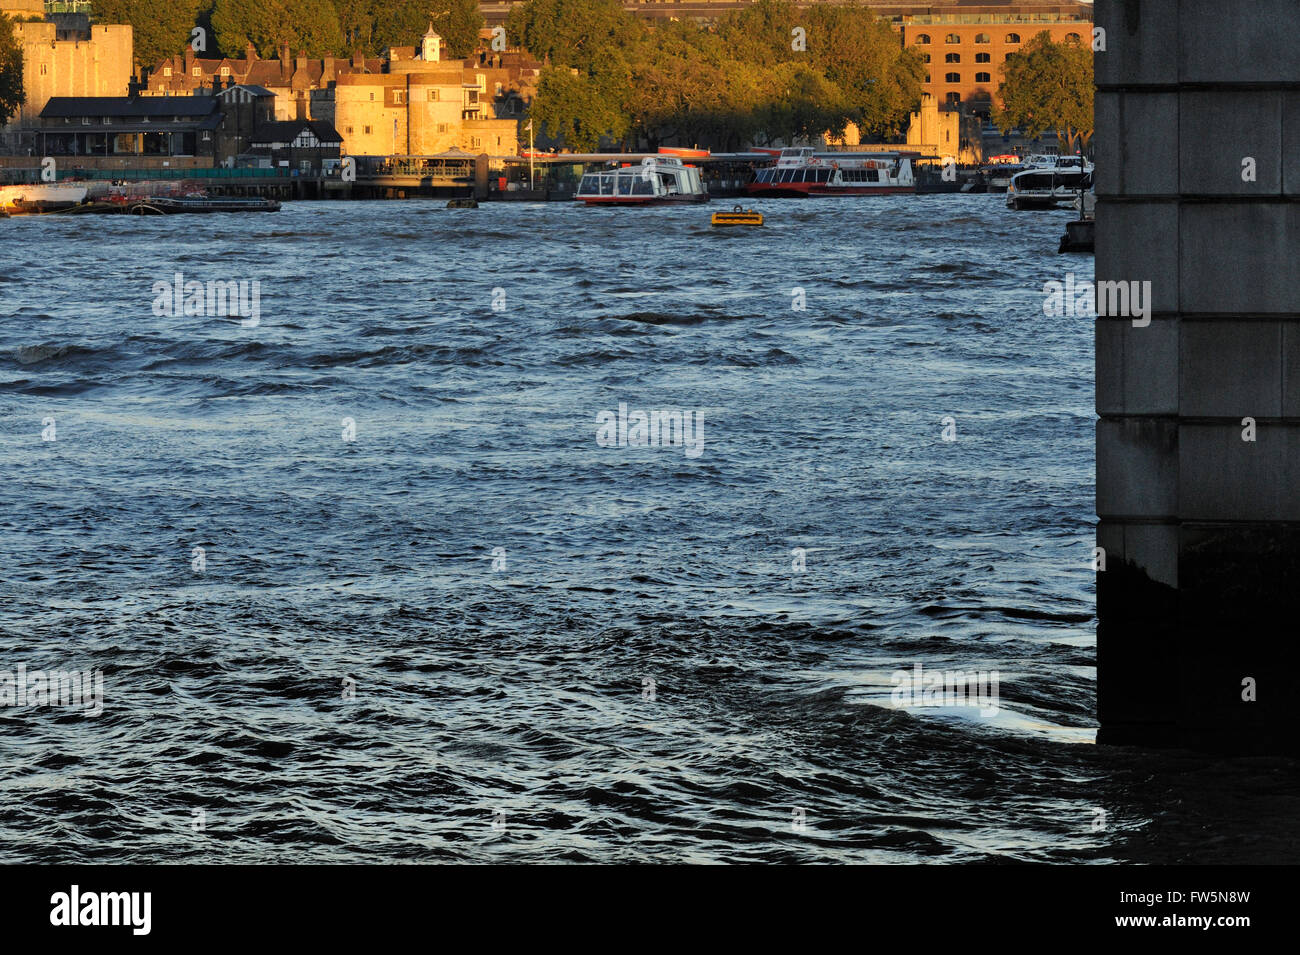 Il fiume Tamigi sotto il ponte di Londra, con la Torre di Londra visibile sulla sponda nord del fiume, al tramonto. Nel romanzo Oliver Twist di Charles Dickens, romanziere inglese, Nancy è sentito con Brownlow e Rose Maylie ai piedi delle scale nelle vicinanze, prima del suo brutale assassinio da Sikes. Foto Stock